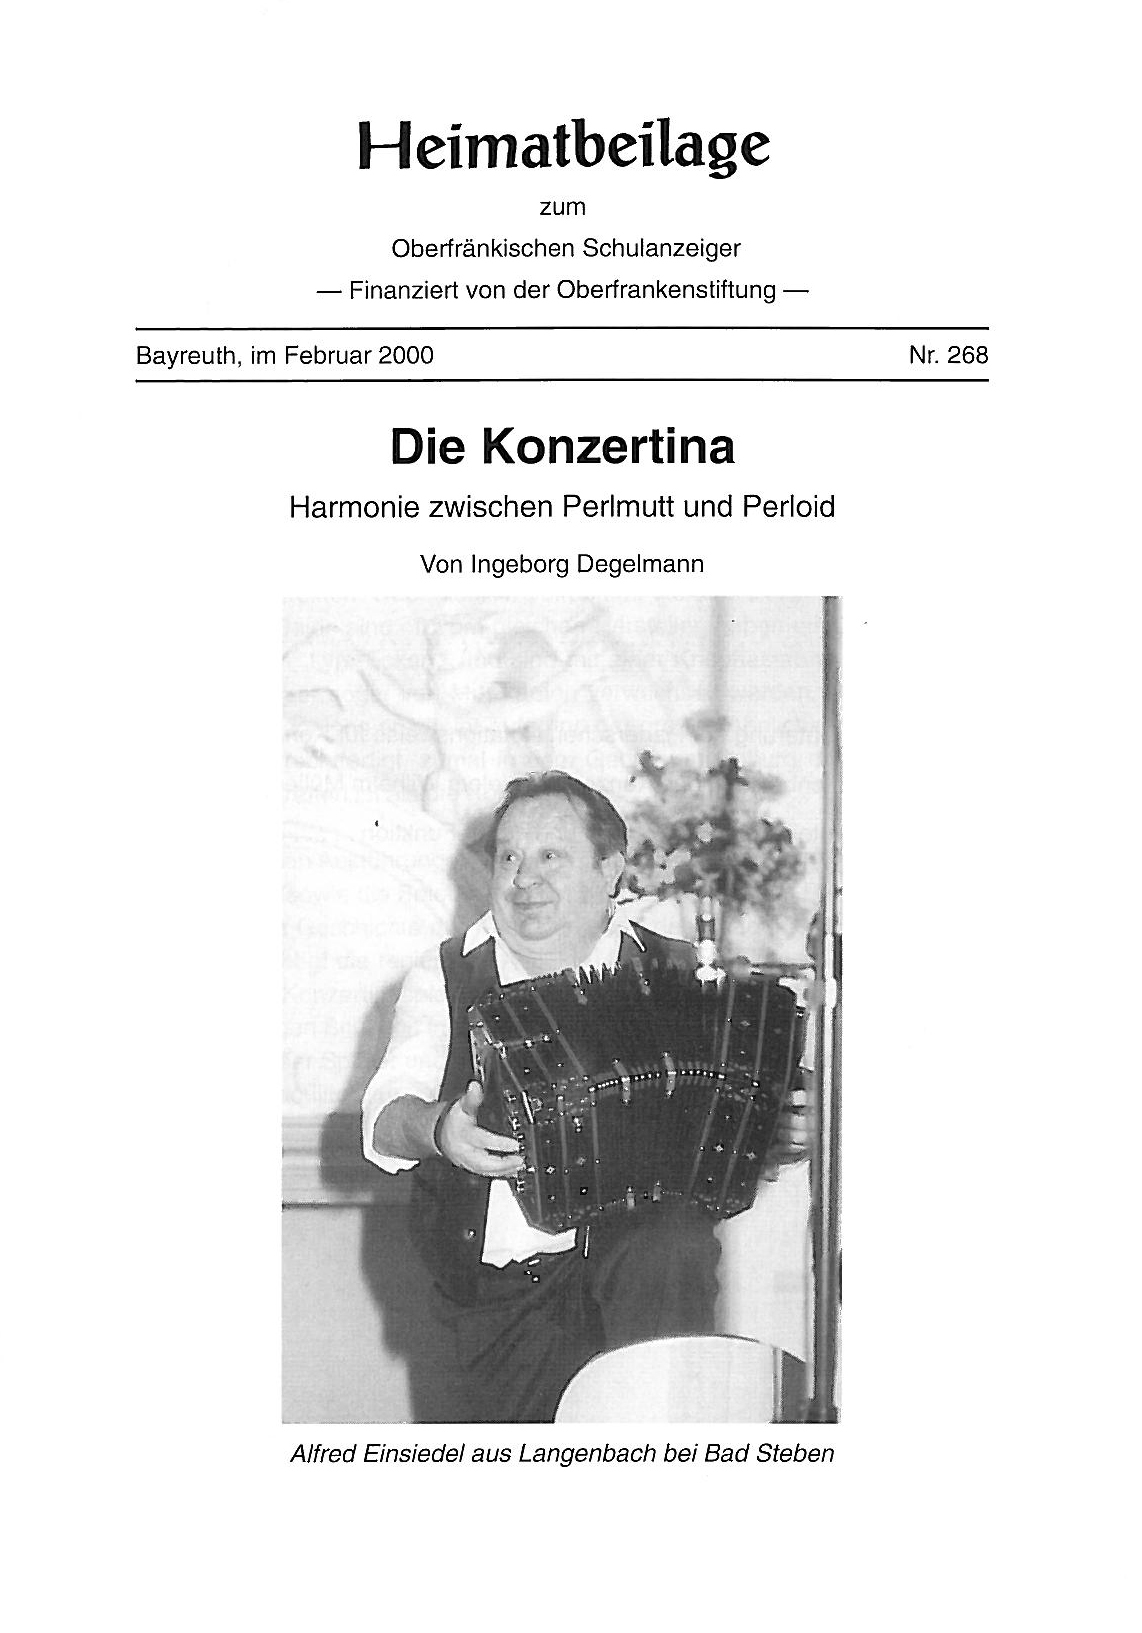 "Die Konzertina - Harmonie zwischen Perlmutt und Perloid"